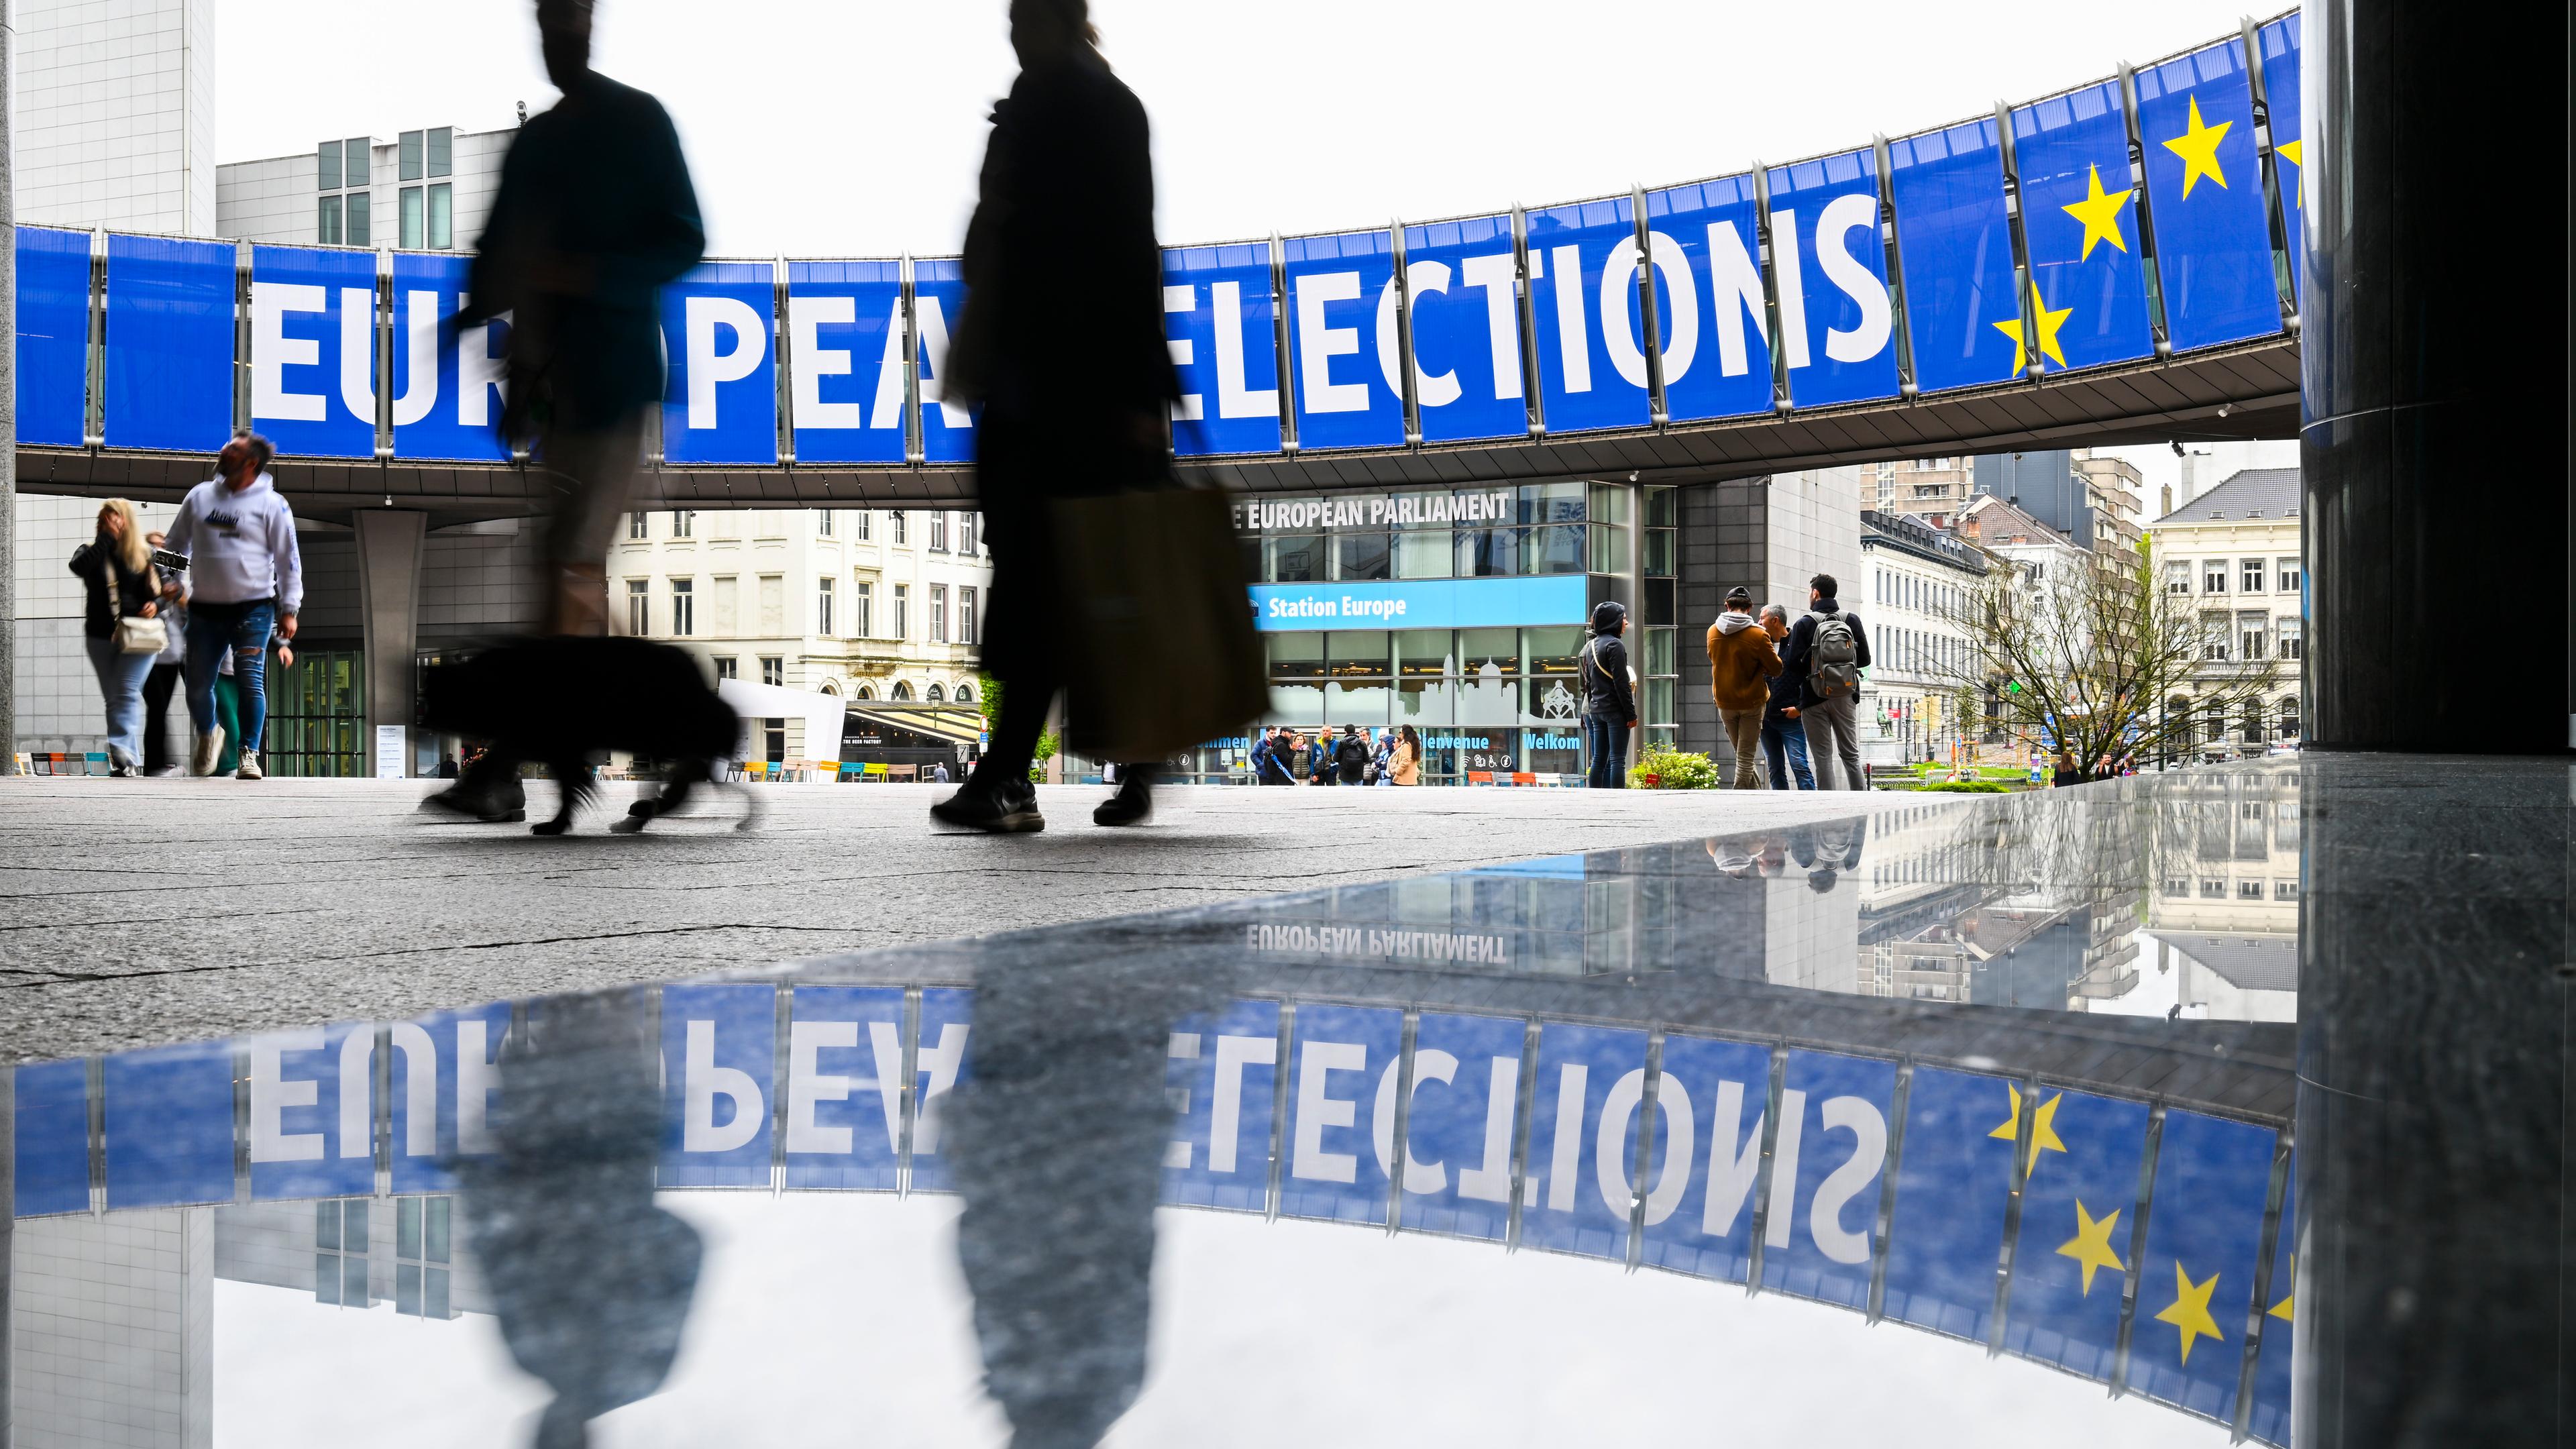 Auf dem Bild ist die Kampagne zur Europawahl zu sehen.